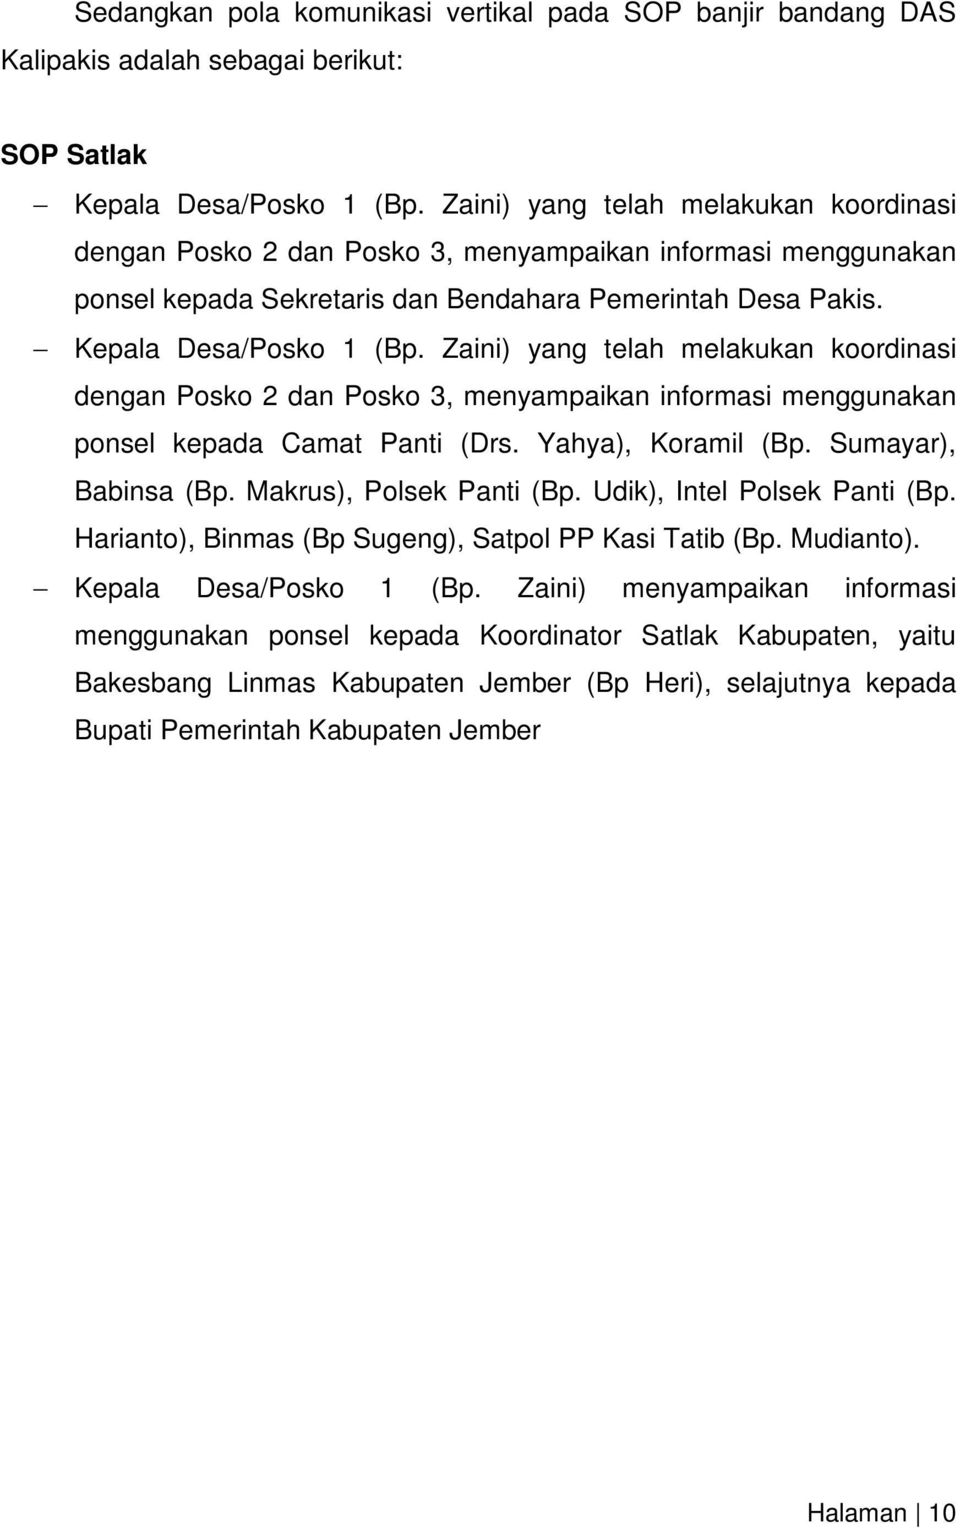 Zaini) yang telah melakukan koordinasi dengan Posko 2 dan Posko 3, menyampaikan informasi menggunakan ponsel kepada Camat Panti (Drs. Yahya), Koramil (Bp. Sumayar), Babinsa (Bp.